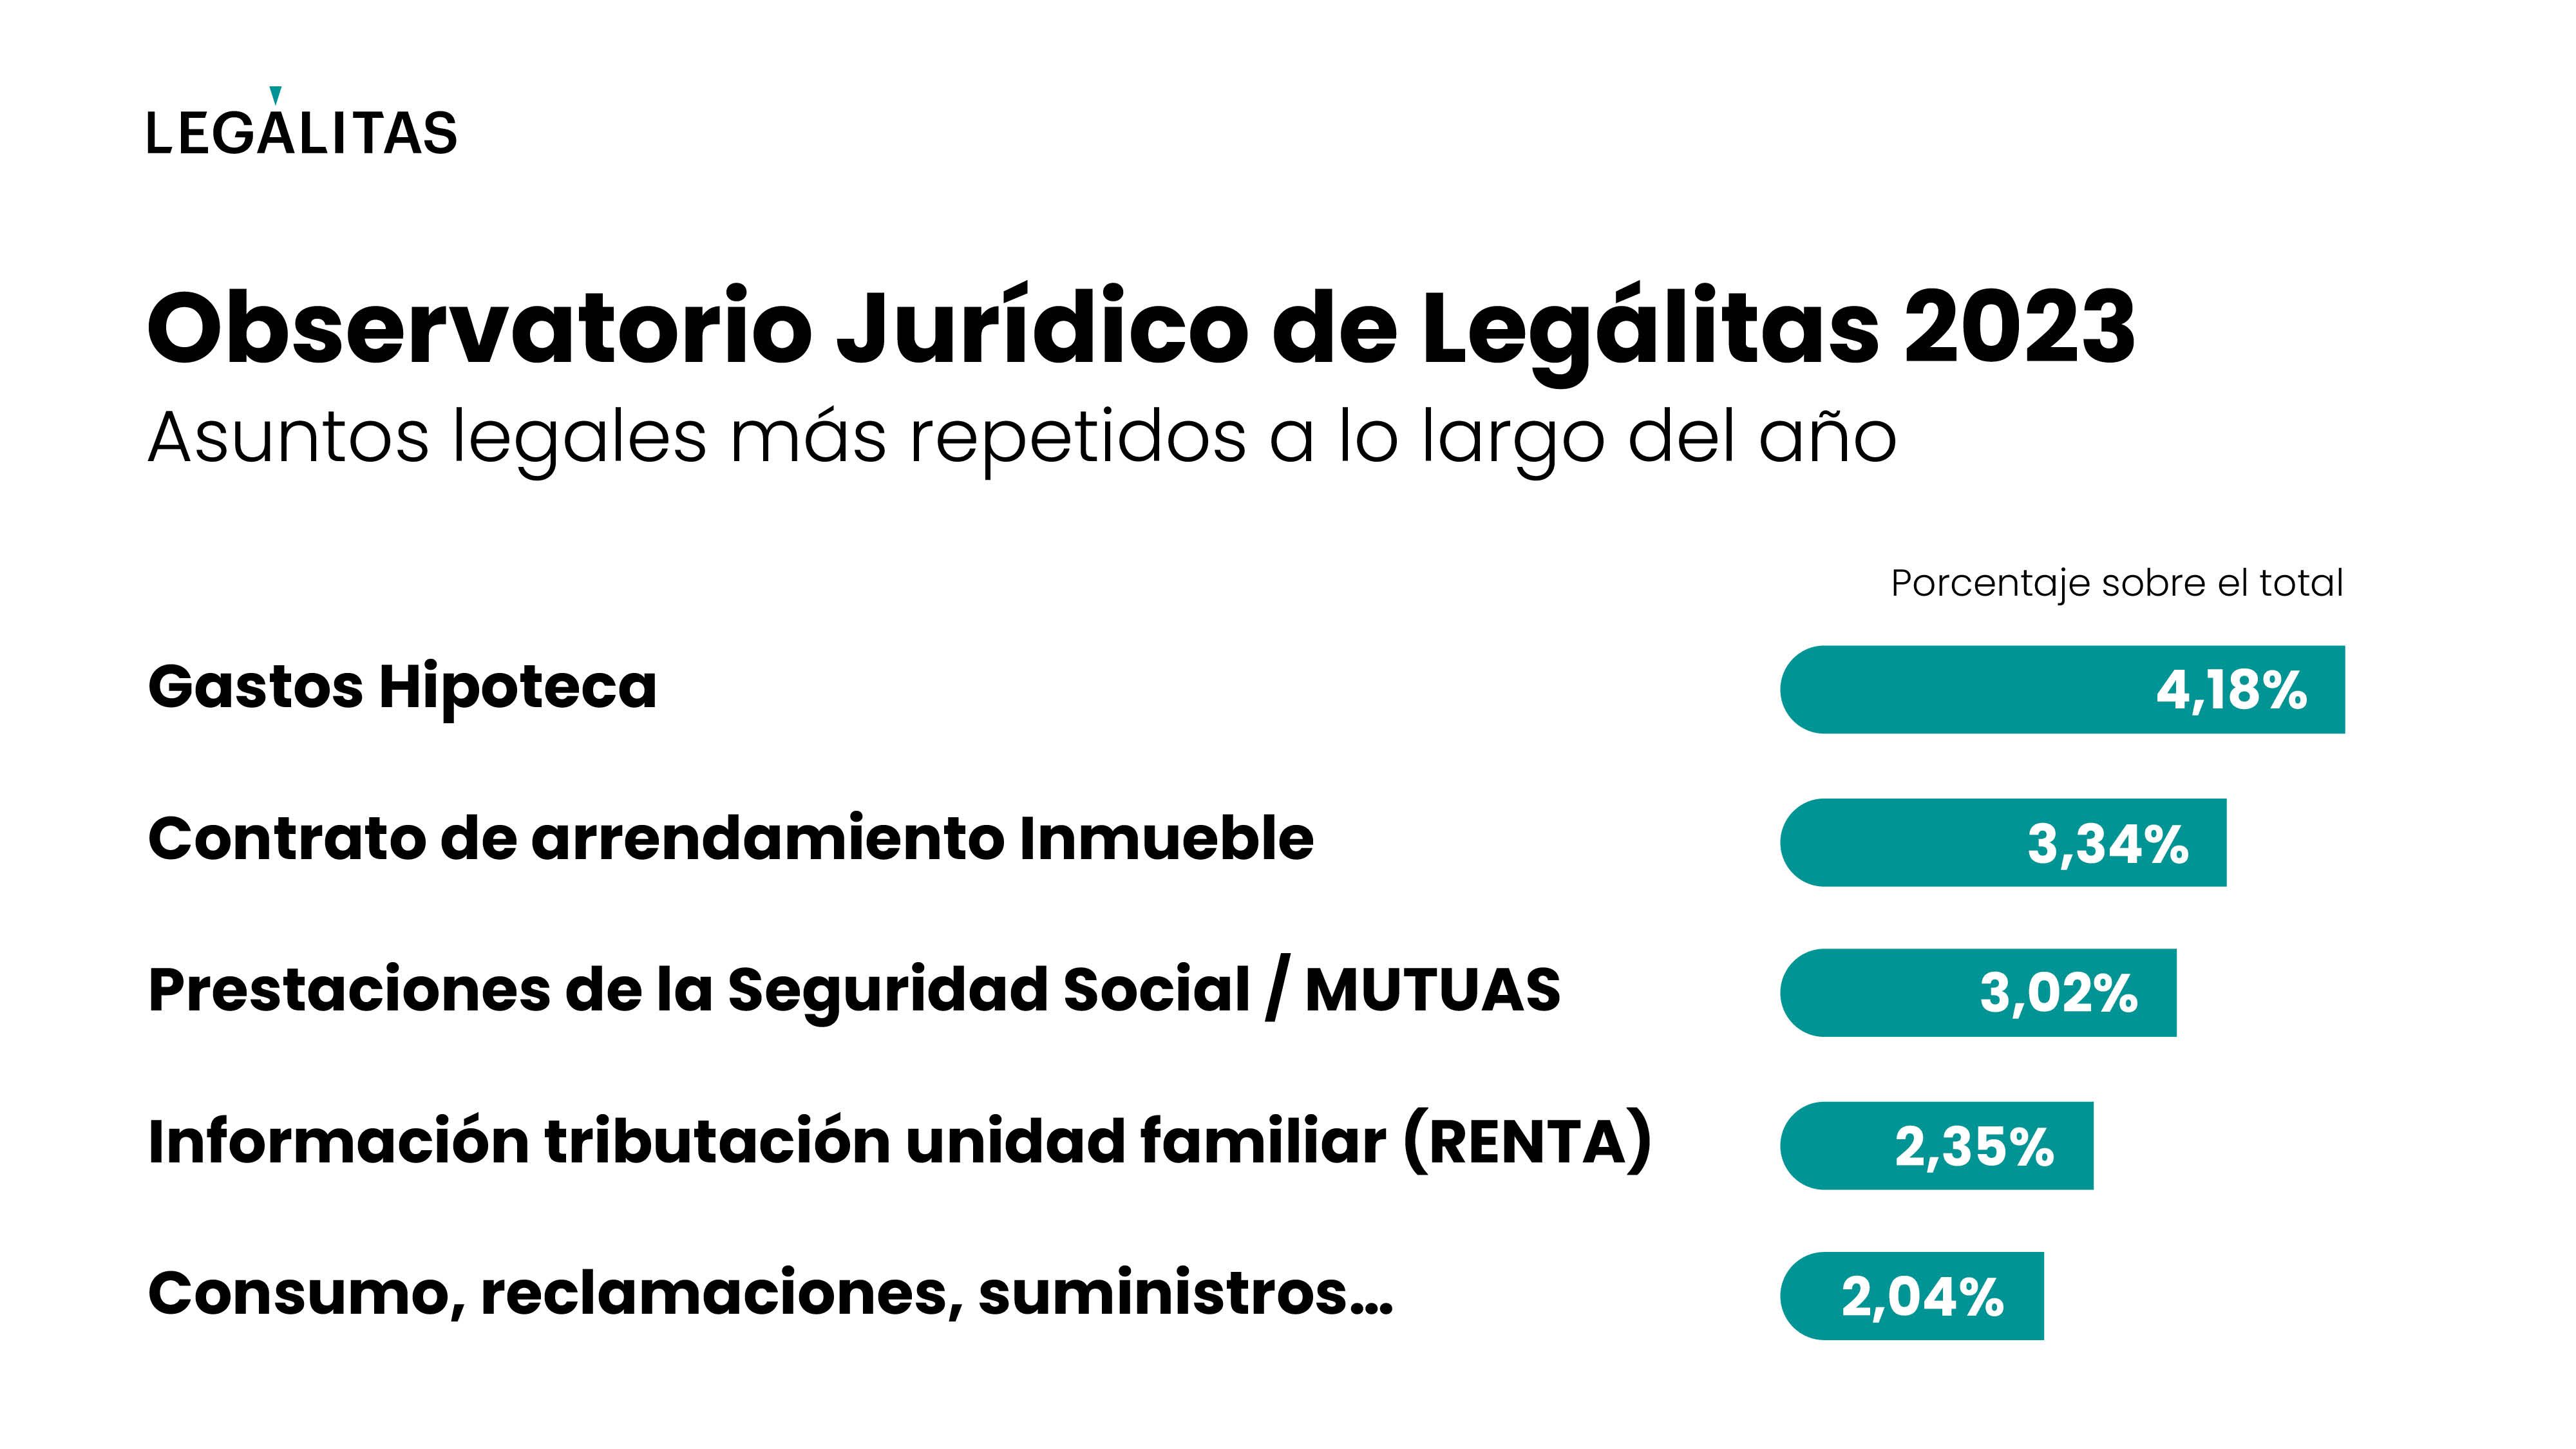 https://static.comunicae.com/photos/notas/1252598/Asuntos-Observatorio_juridico_de_Legalitas_2023.jpg